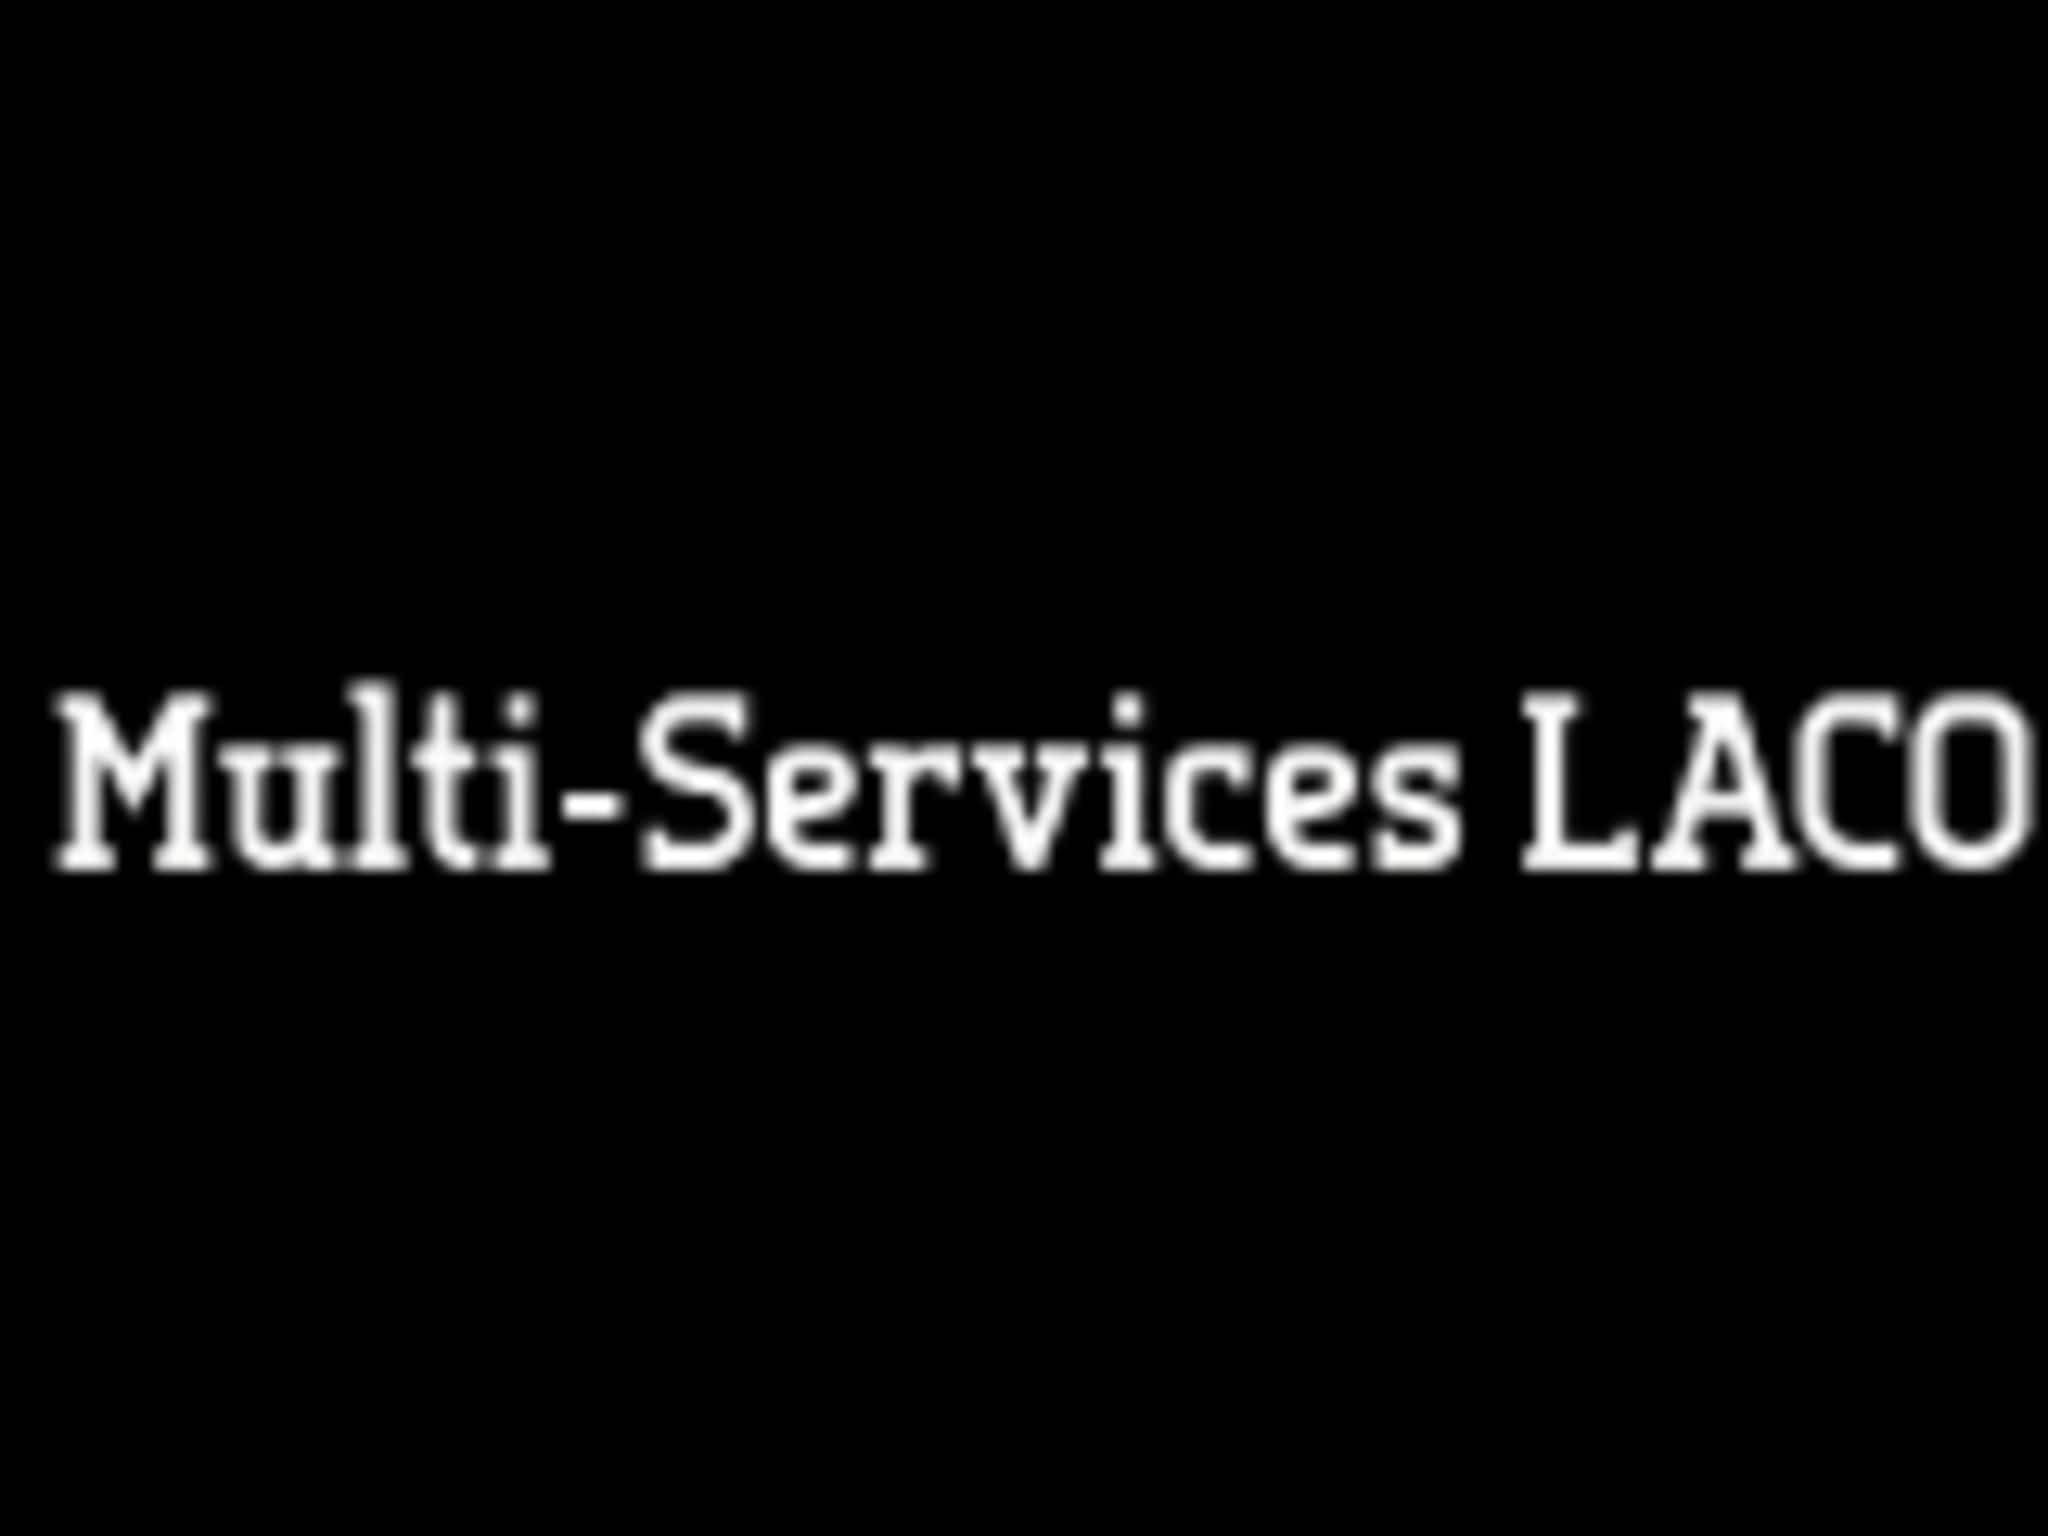 photo Multi-Services LACO